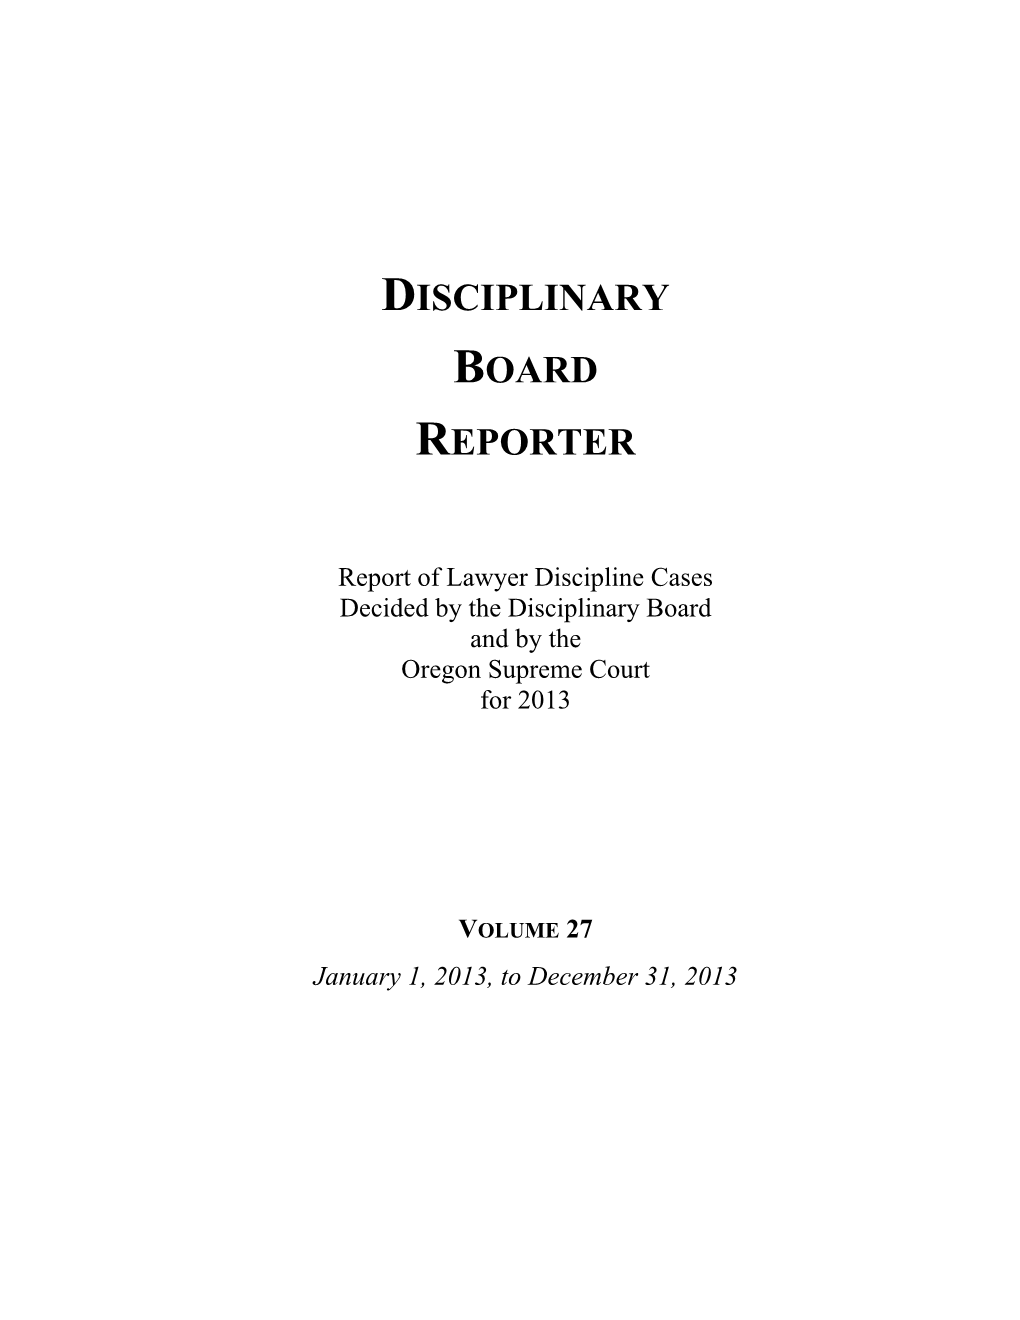 Disciplinary Board Reporter, Volume 27